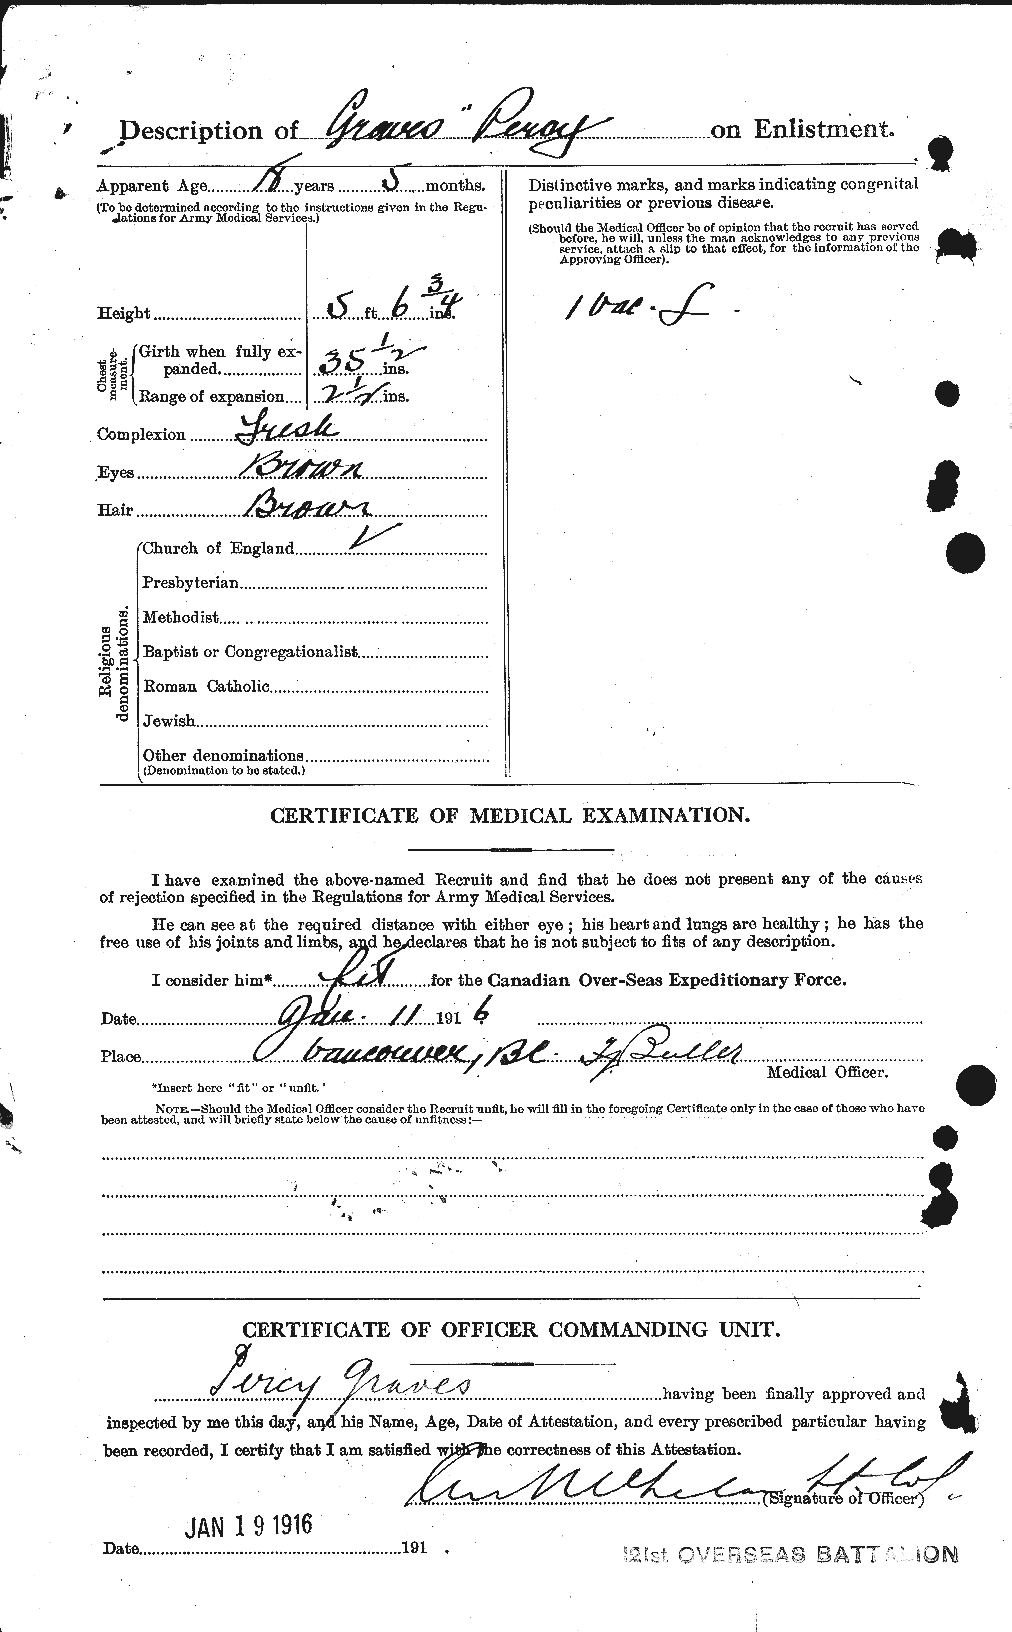 Dossiers du Personnel de la Première Guerre mondiale - CEC 359838b